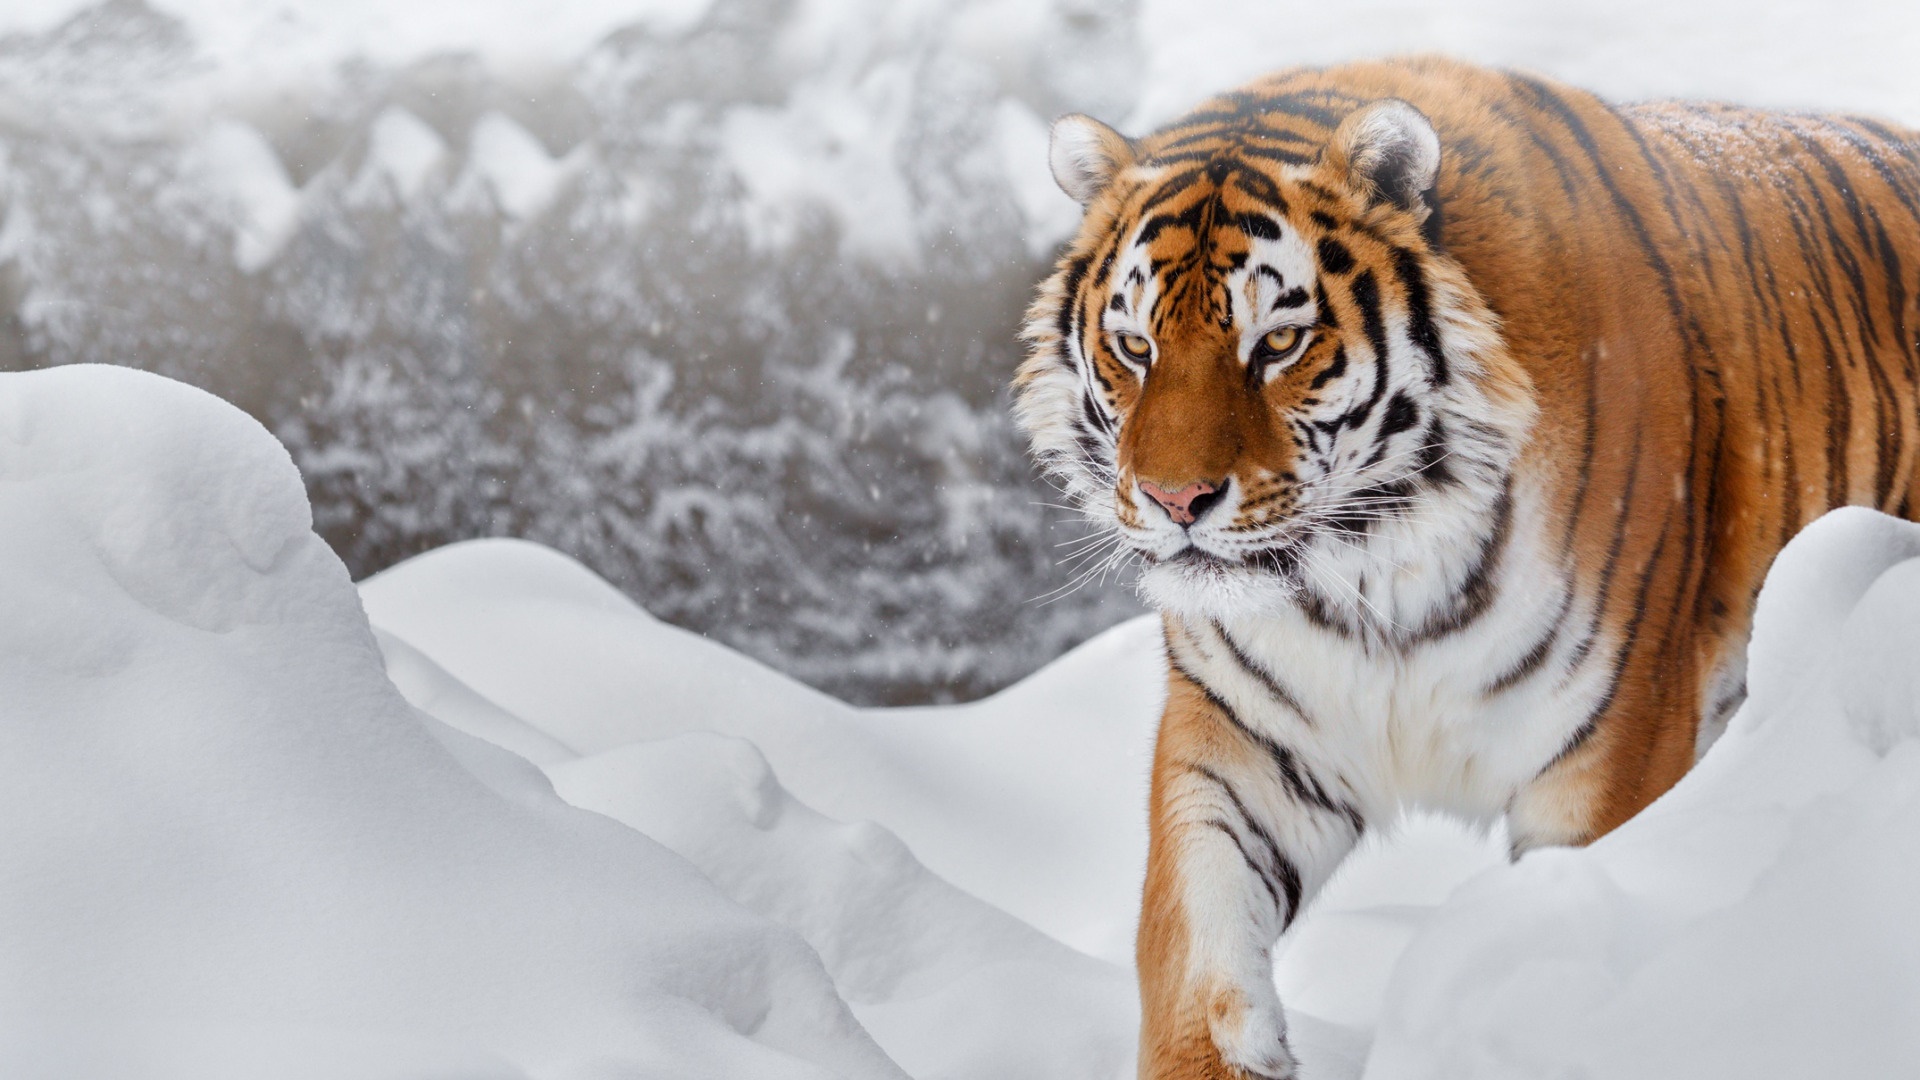 Скачать обои бесплатно Животные, Снег, Тигр, Кошки, Сибирский Тигр картинка на рабочий стол ПК